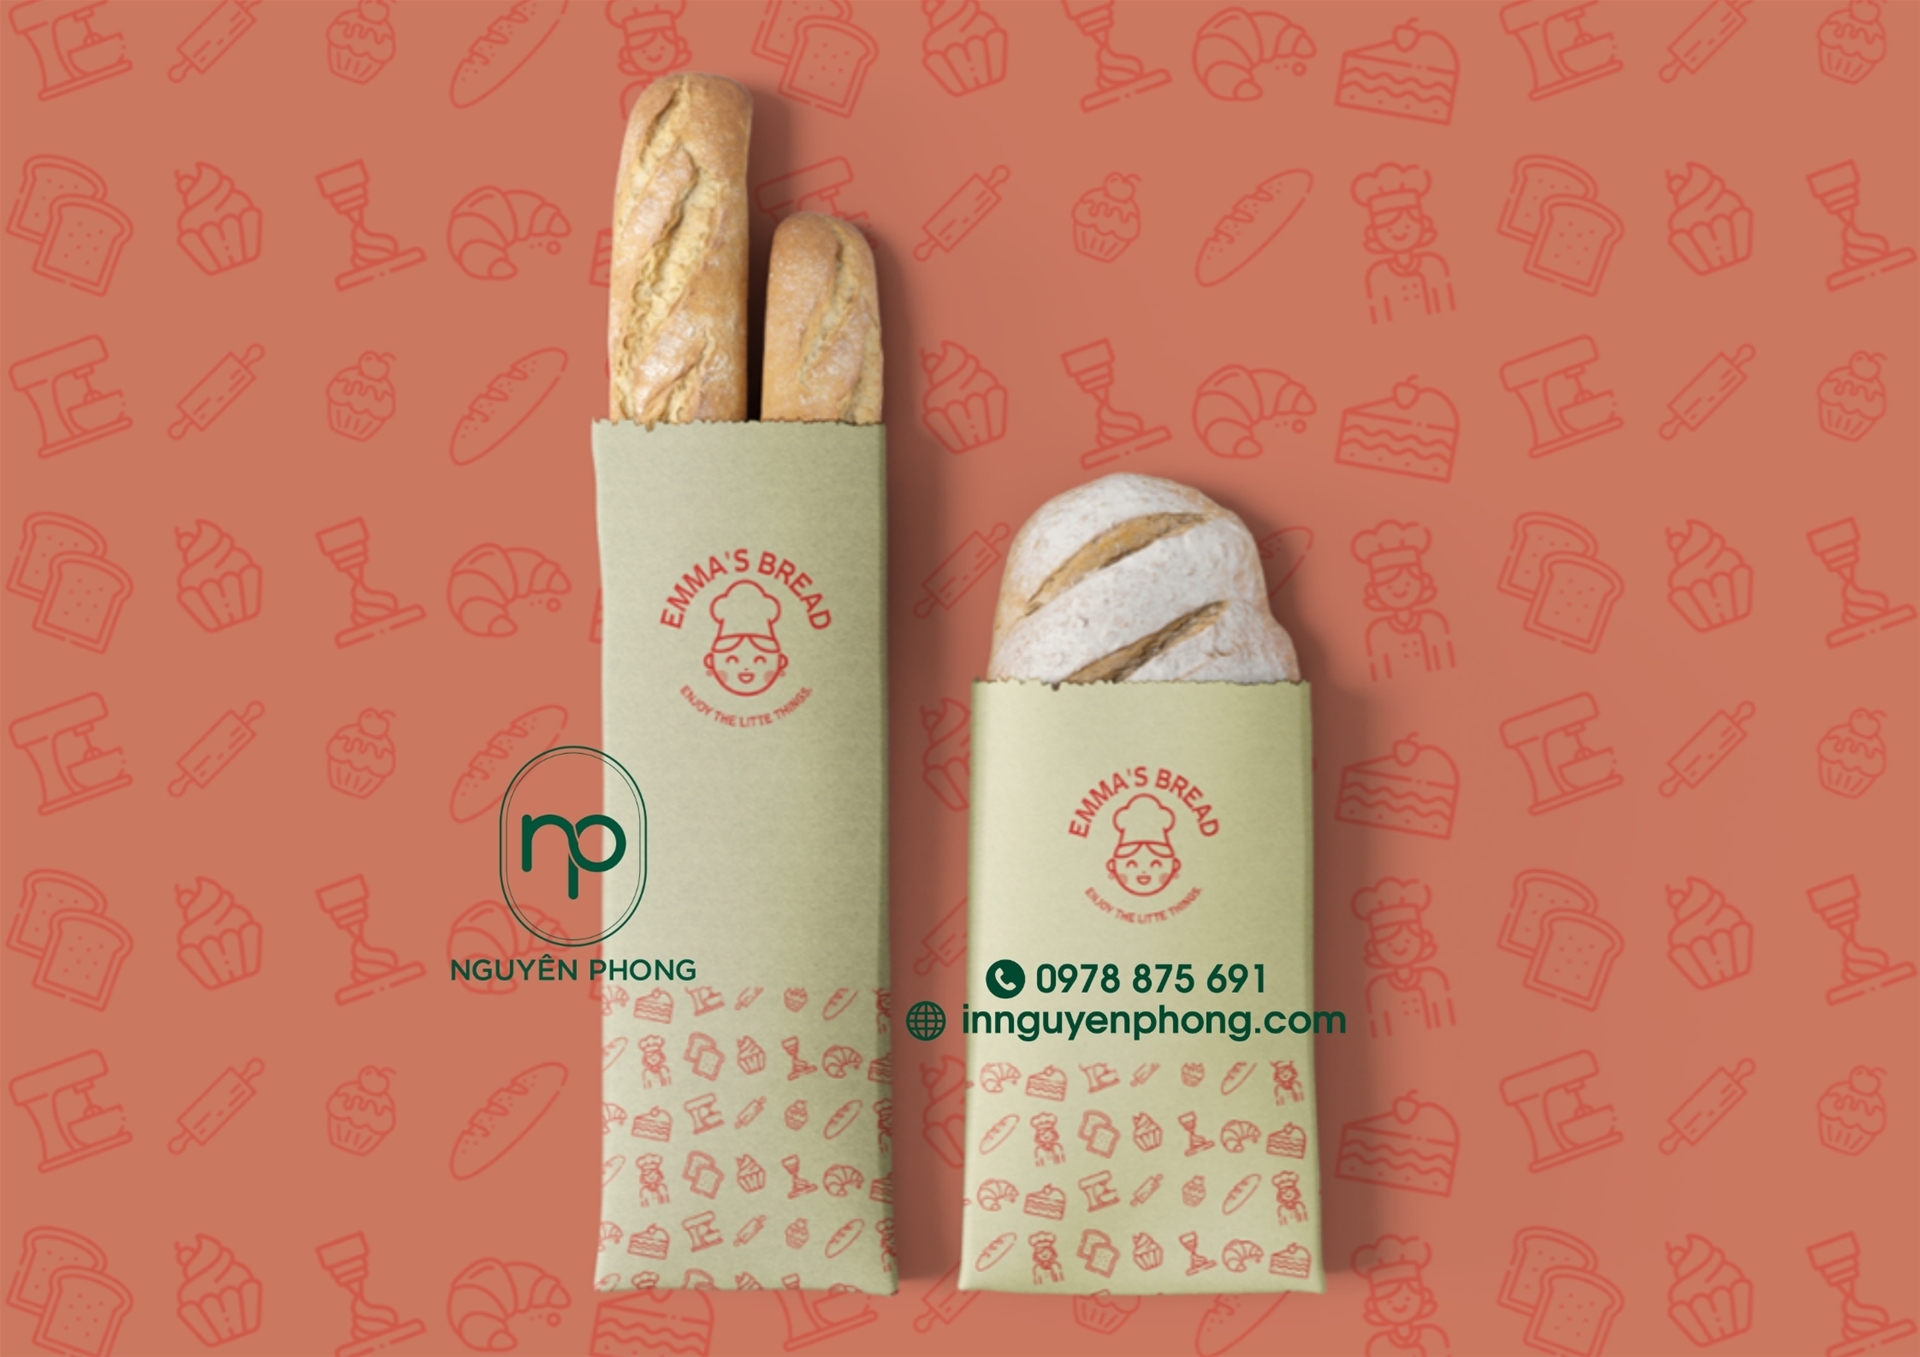 Tư vấn mua túi giấy đựng bánh mì giá rẻ, thiết kế đẹp xu hướng 2021